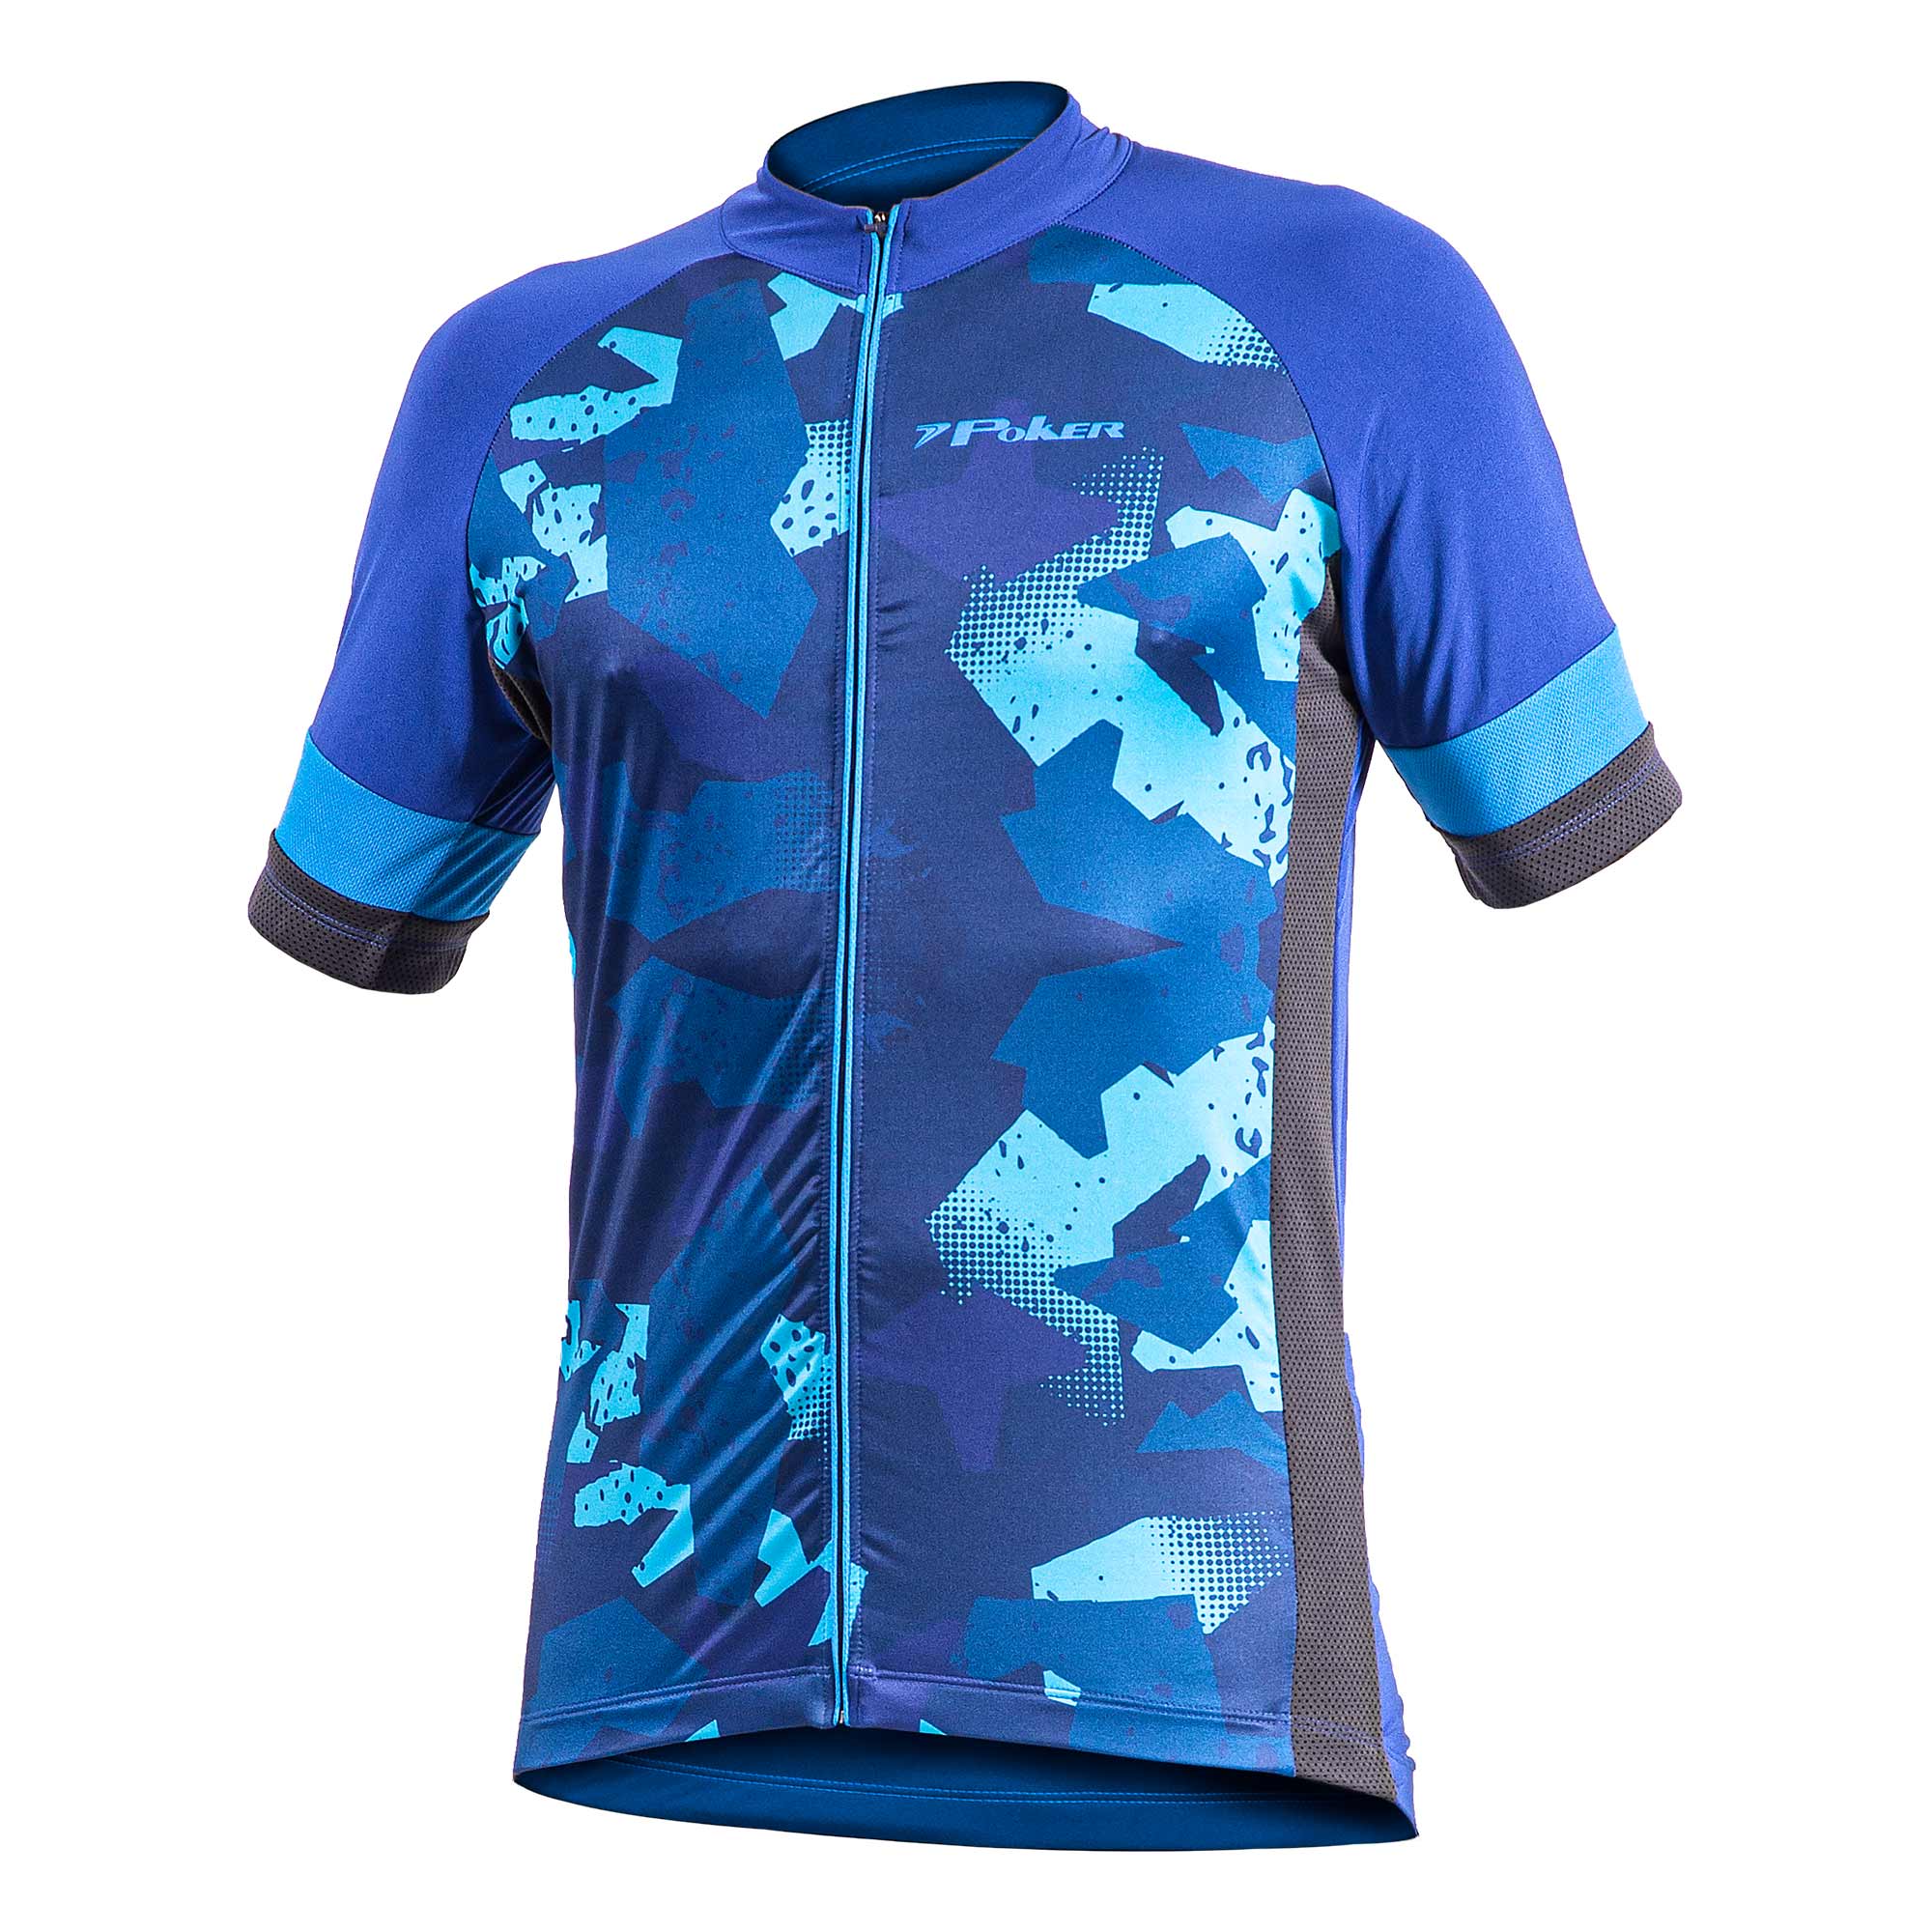 Camiseta Poker Ciclista com Ziper Total Defend Azul - Masculina